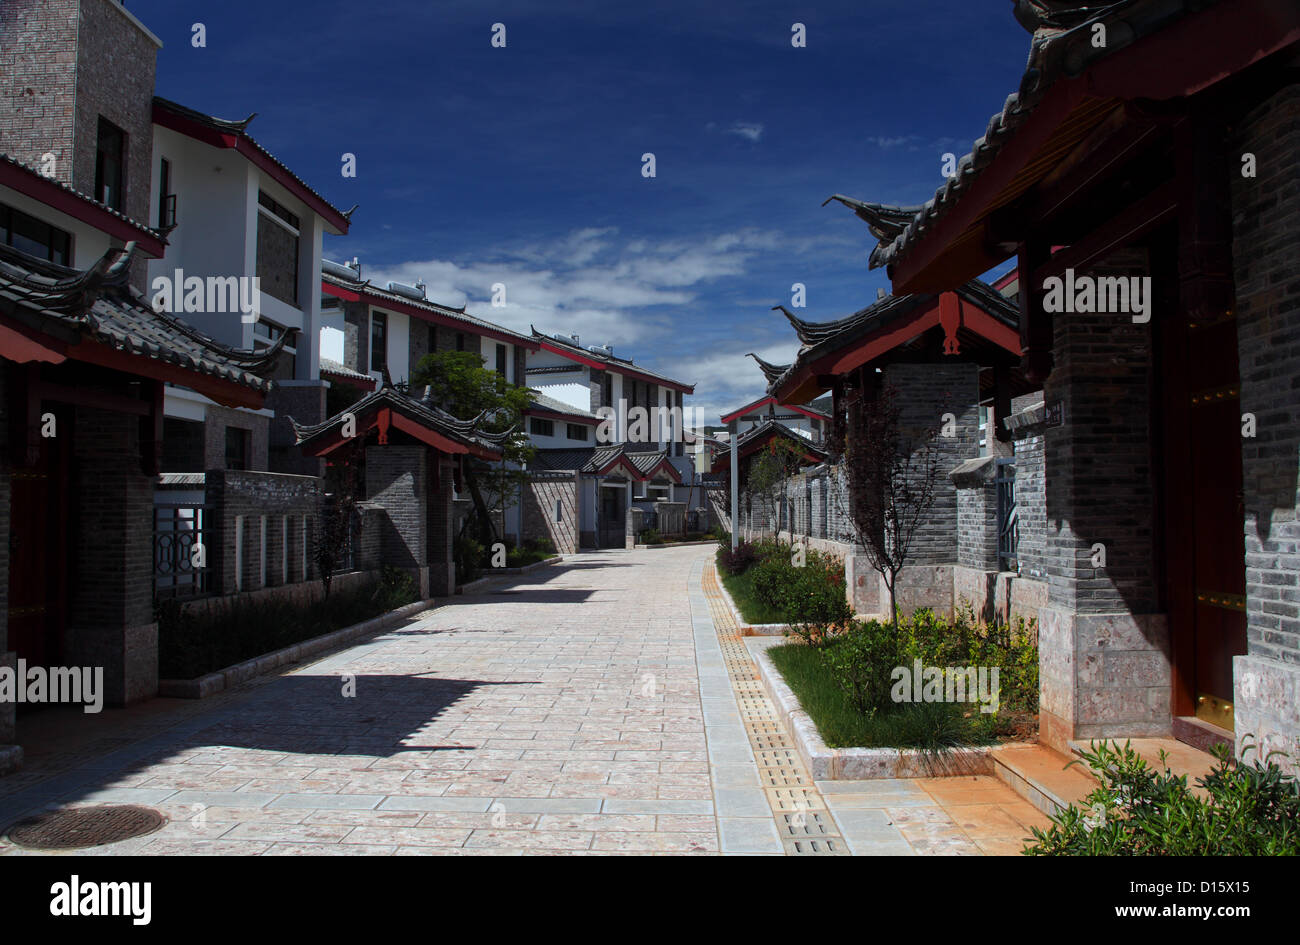 Moderne chinesische Wohngebiet in der Nähe der Stadt Lijiang in der südlichen Provinz Yunnan. Bauen in trad. Naxi Design und Farben in dieser Region. Stockfoto